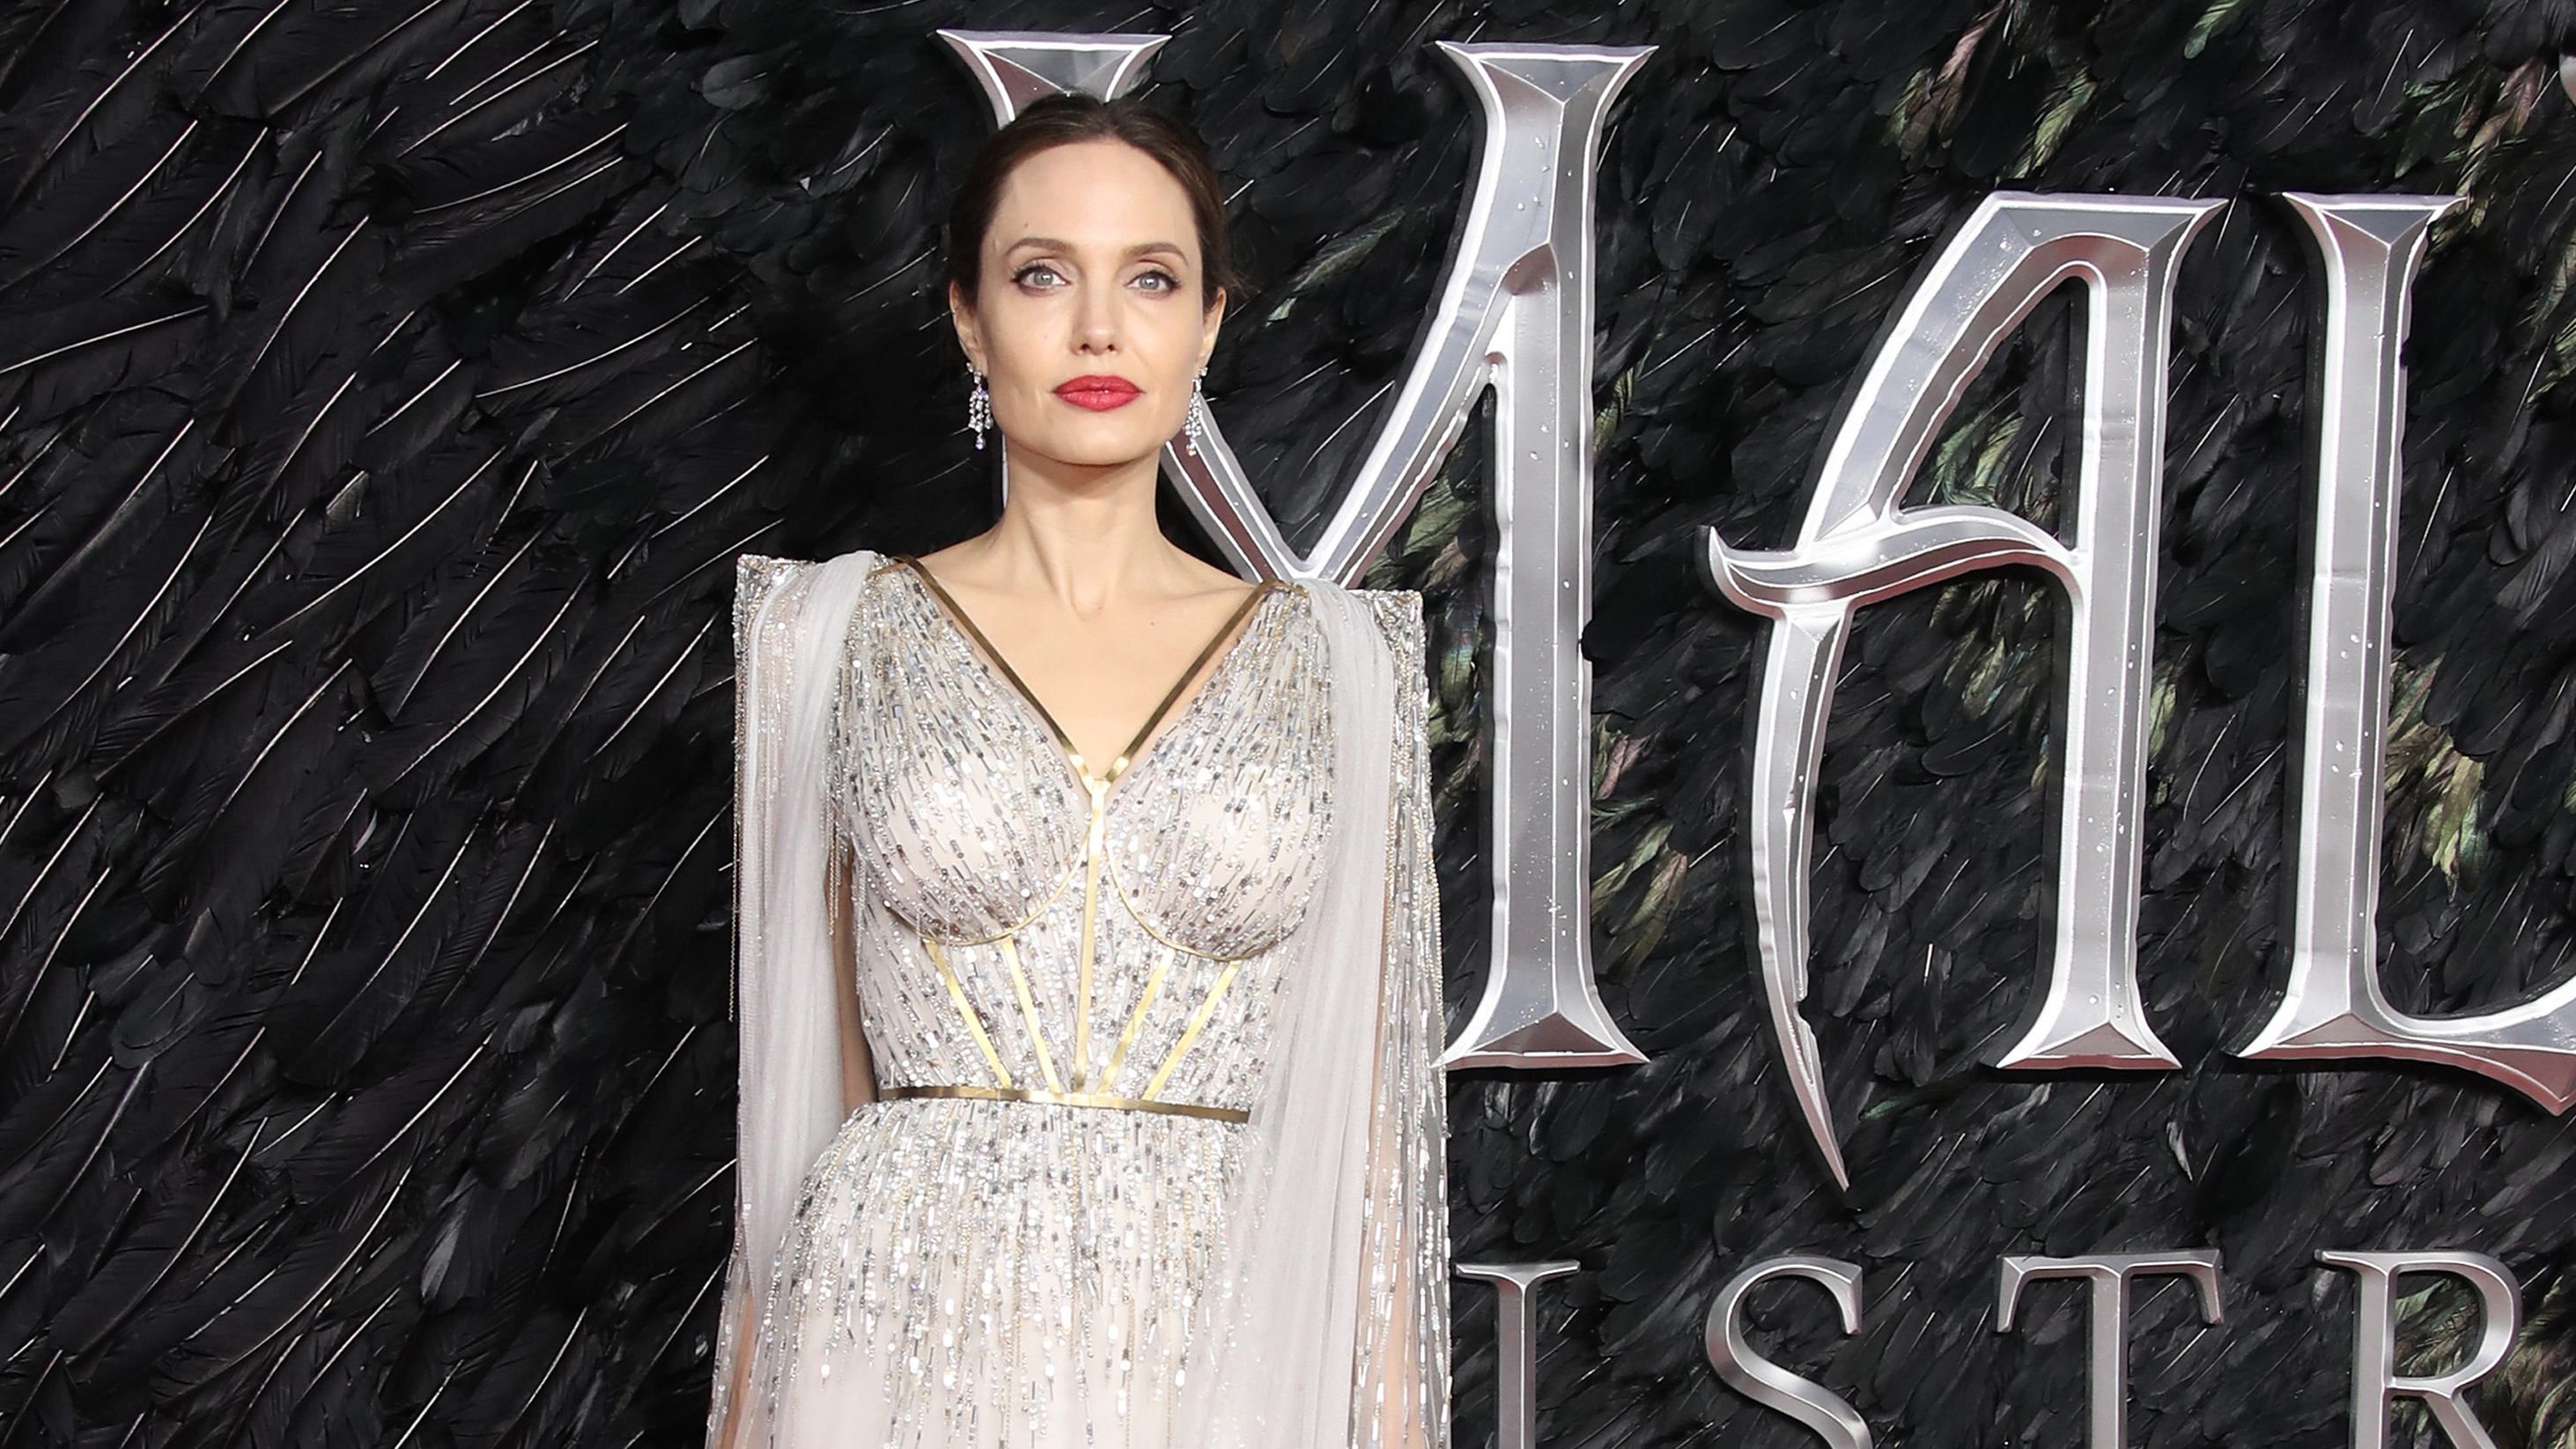 Розкіш і сяйво: Анджеліна Джолі в неймовірній сукні прийшла на прем'єру "Чаклунки 2"